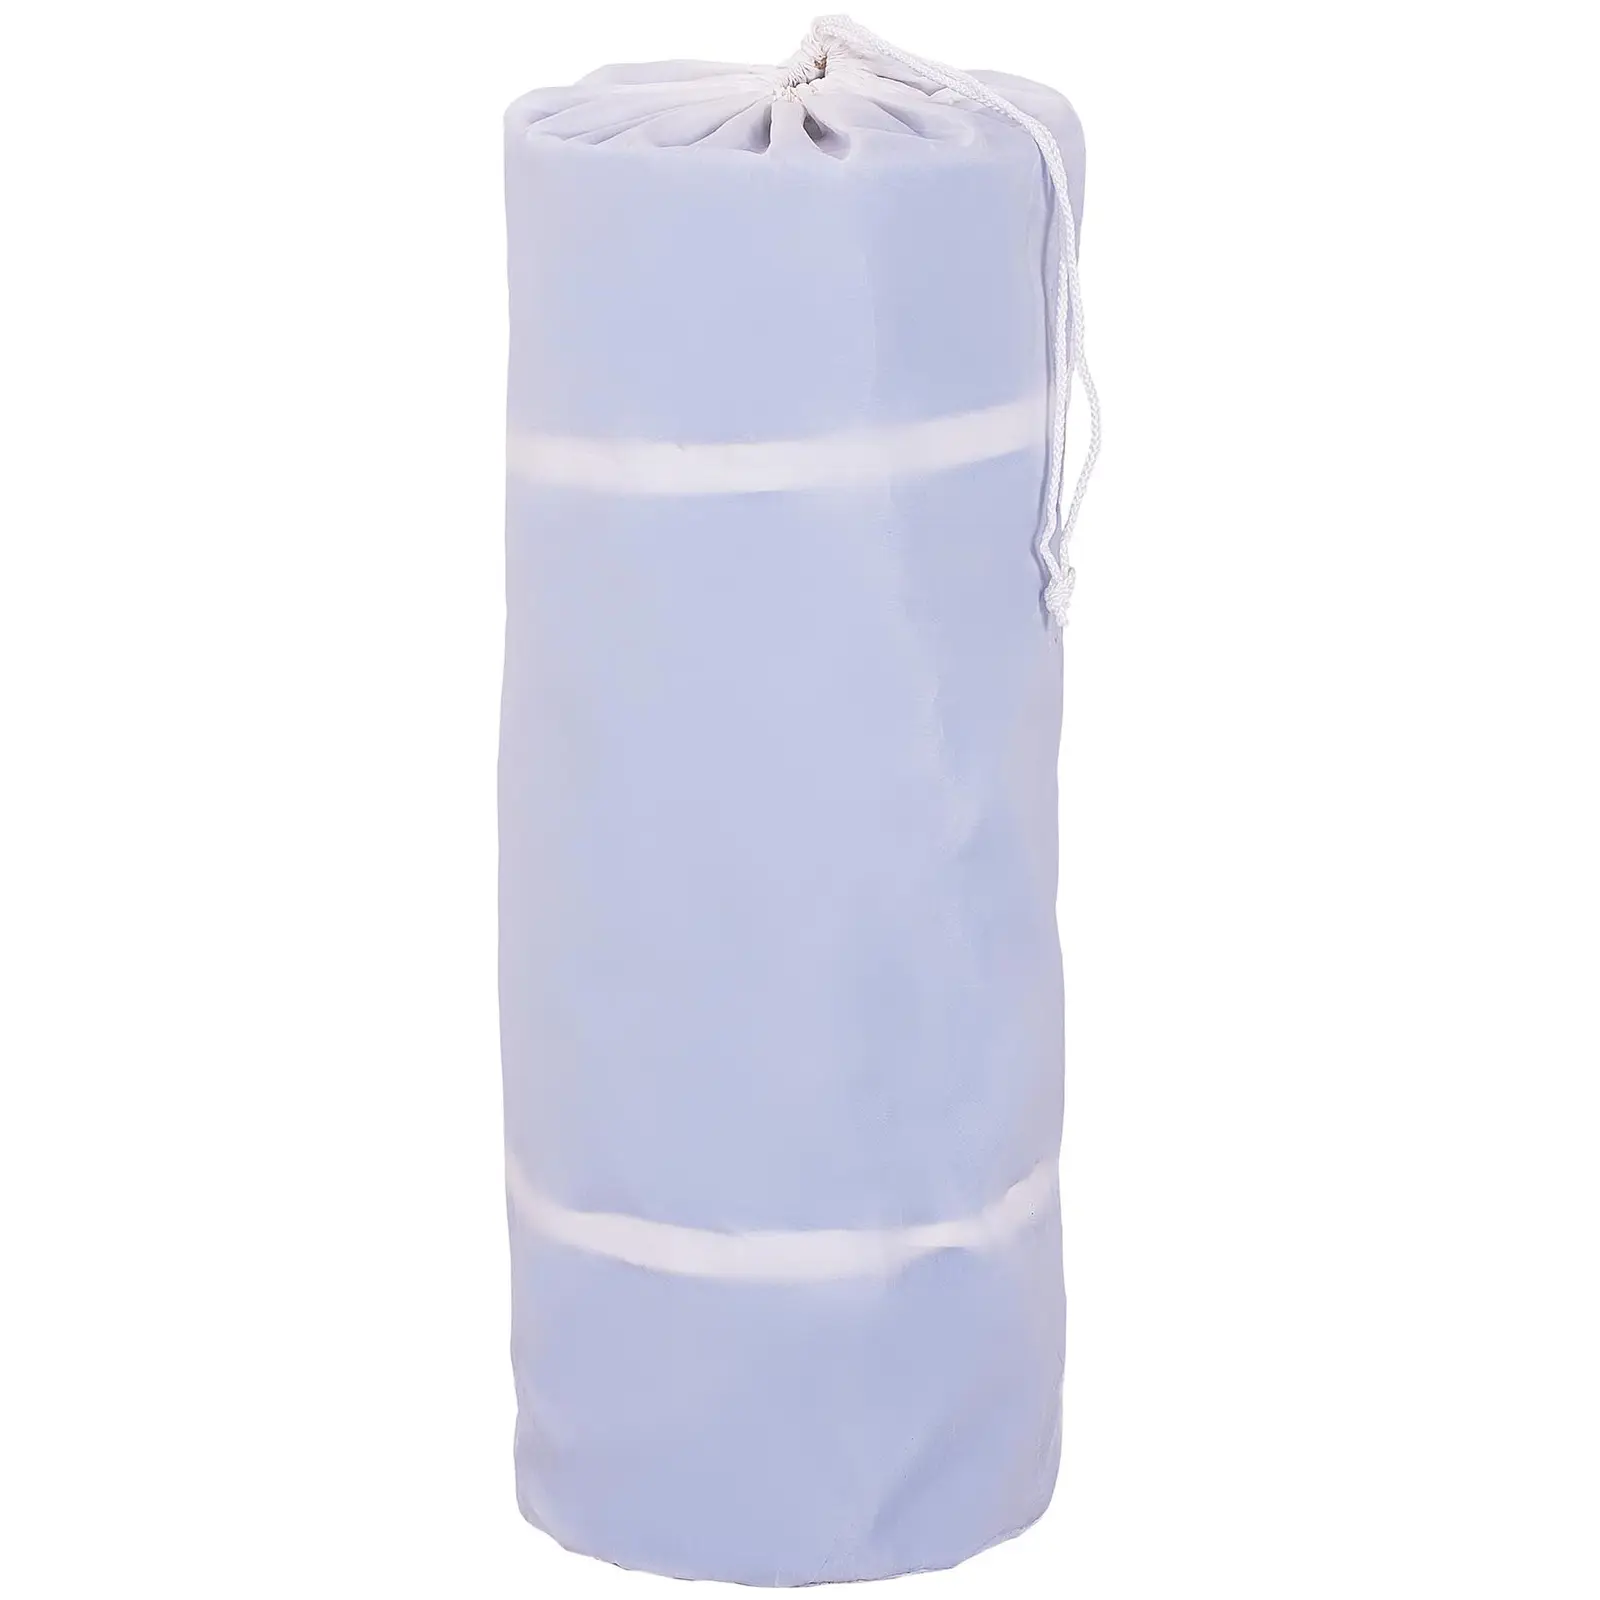 Felfújható tornaszőnyeg - 600 x 200 x 20 cm - 400 kg - kék/fehér